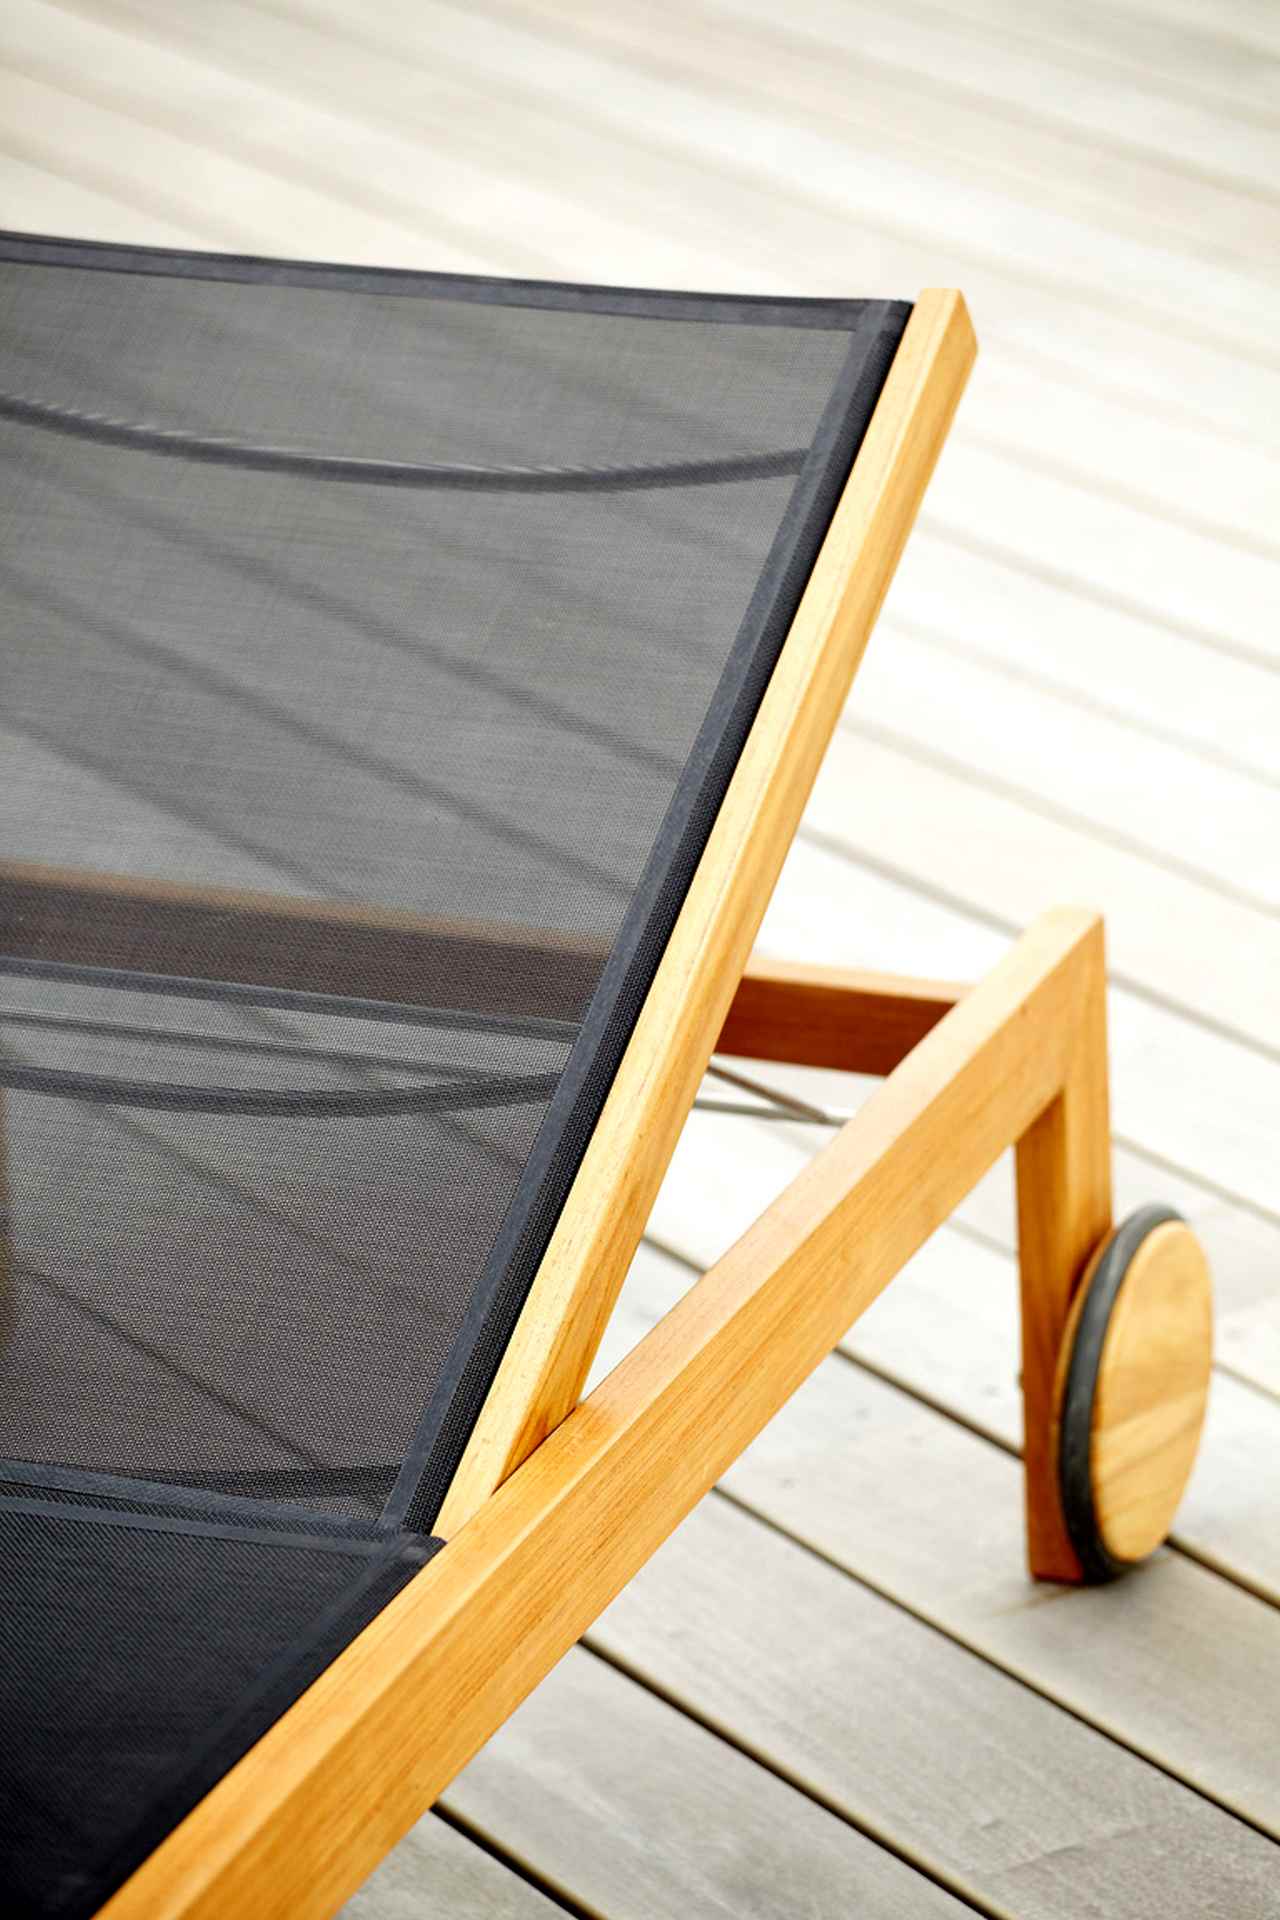 Die Sonnenliege Sonoma wurde aus Teakholz gefertigt. Sie besitzt Rollen für den einfachen Transport. Designet wurde sie von der Marke Jan Kurtz. Die Farbe der Liege ist Schwarz.